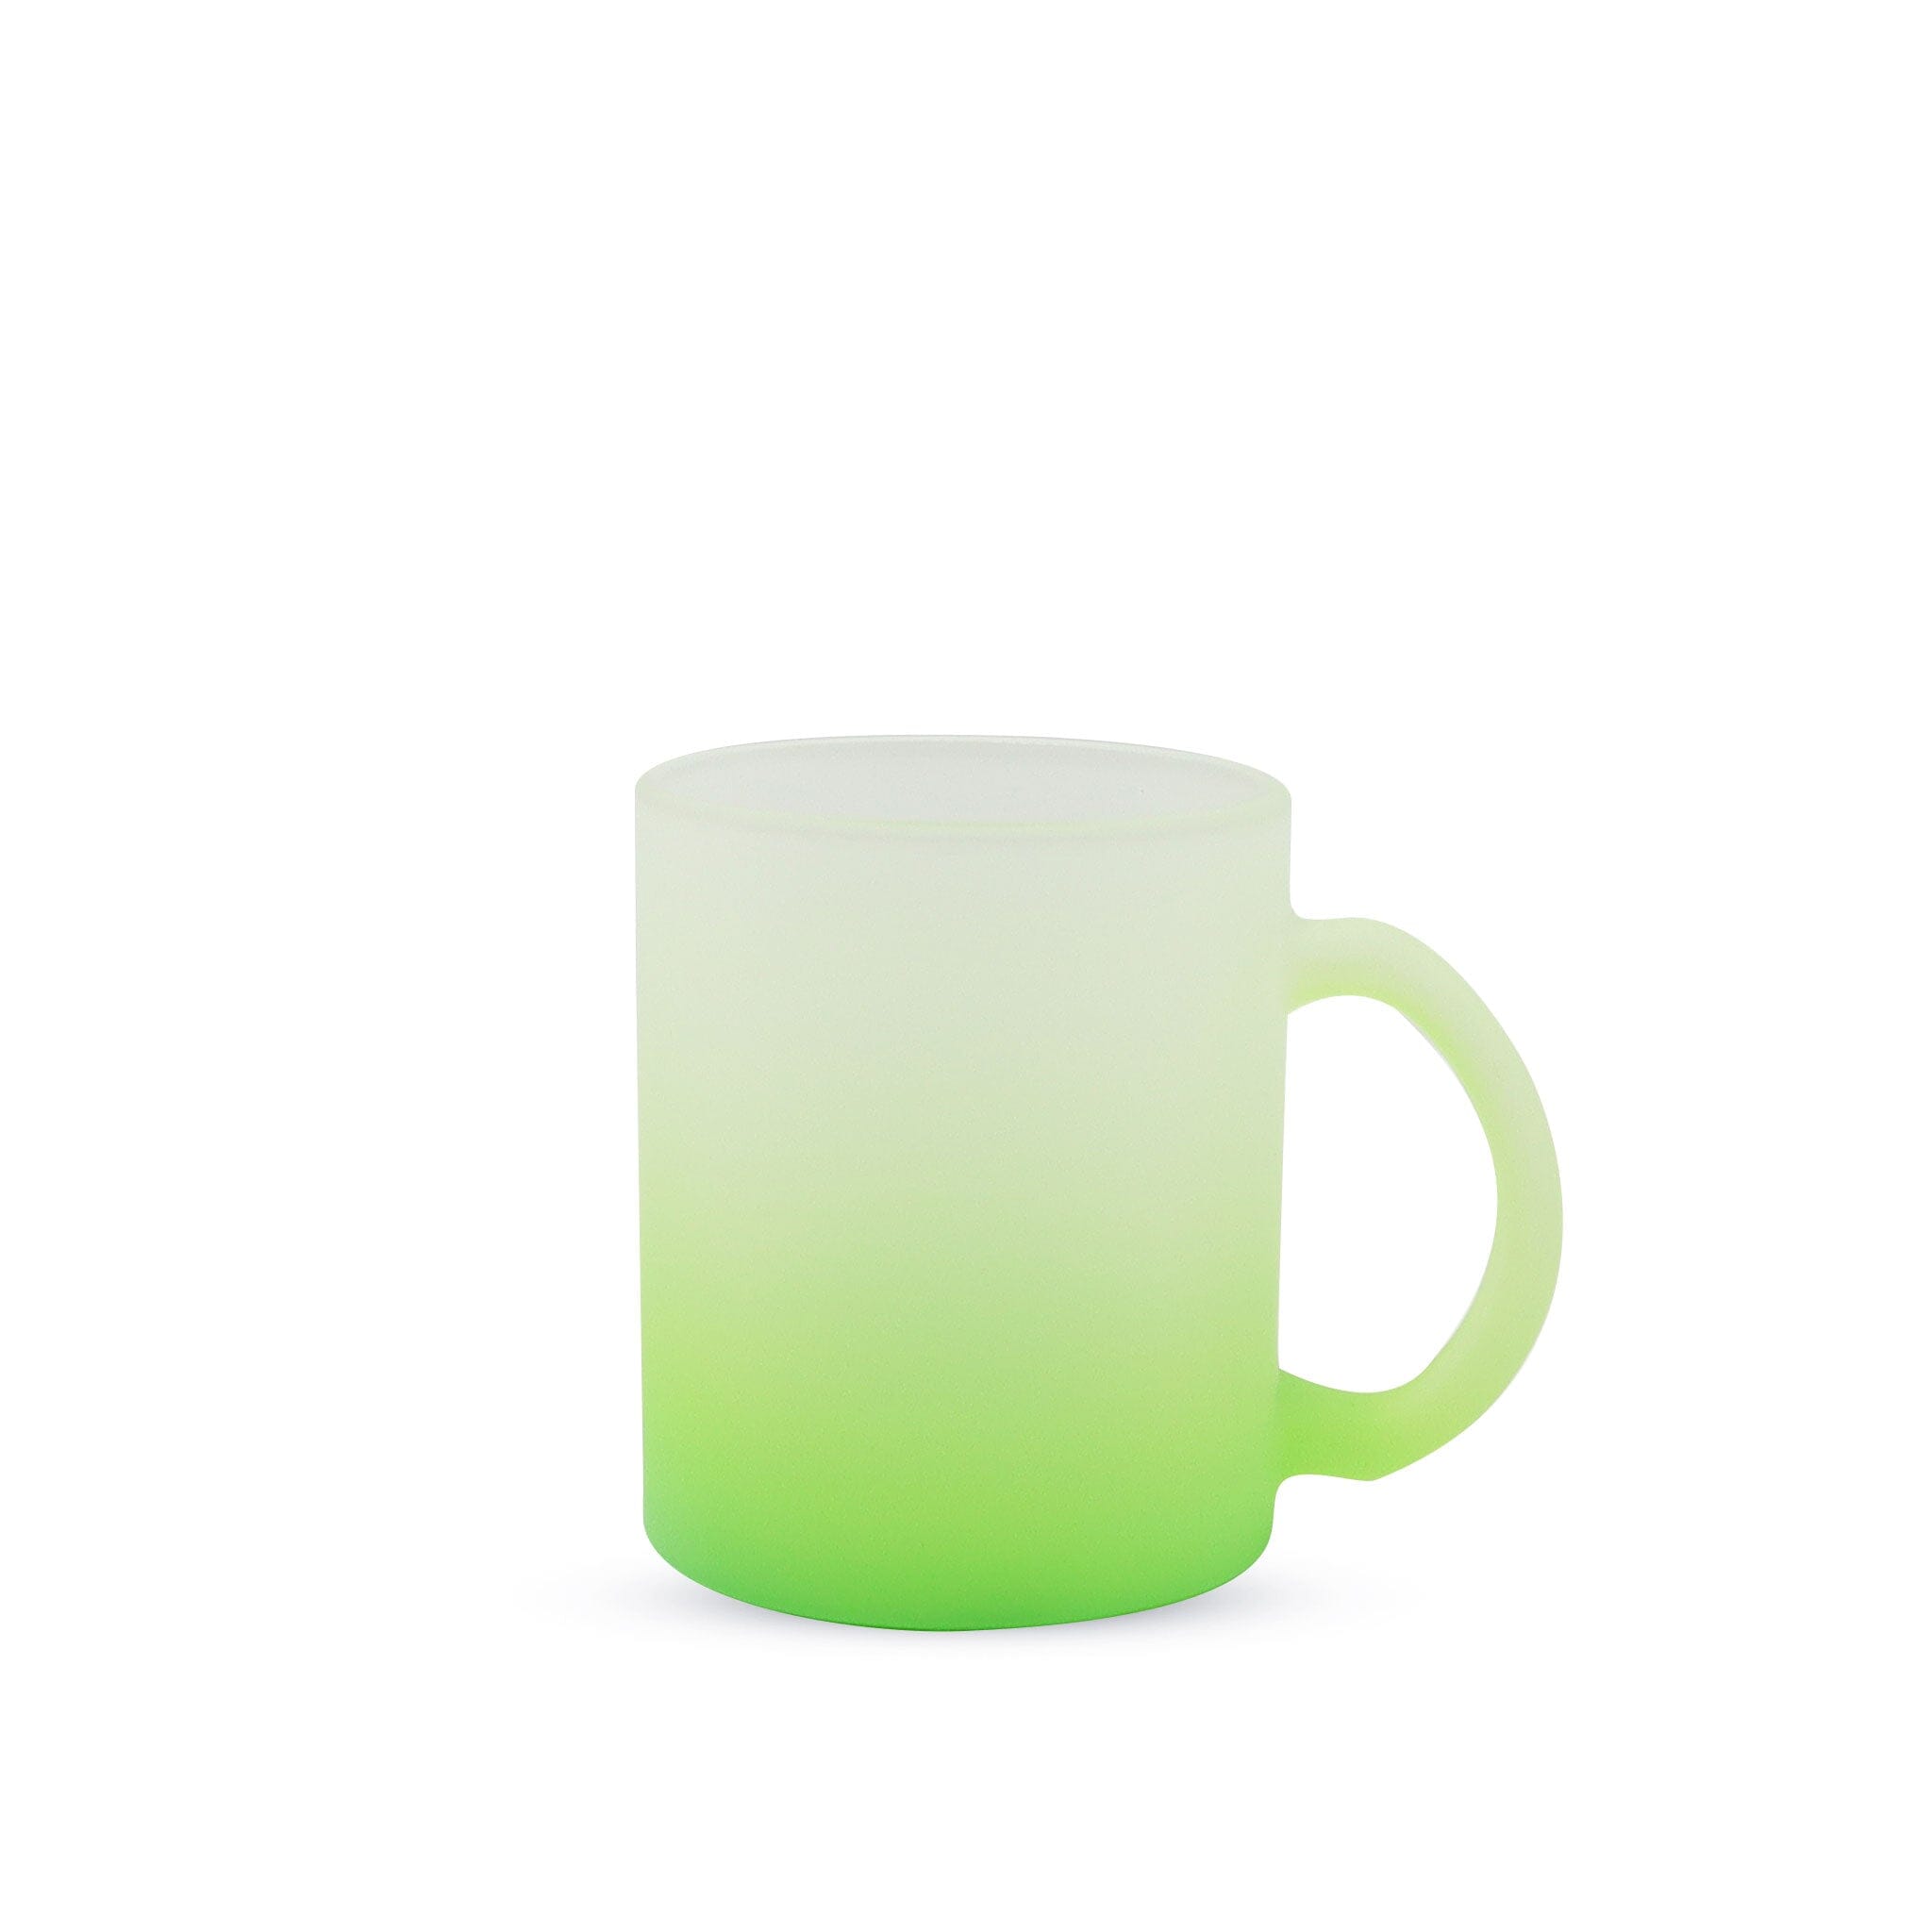 https://www.kupresso.com/cdn/shop/products/11oz-sublimation-glass-camper-mug-frosted-kupresso-green-396476.jpg?v=1696255475